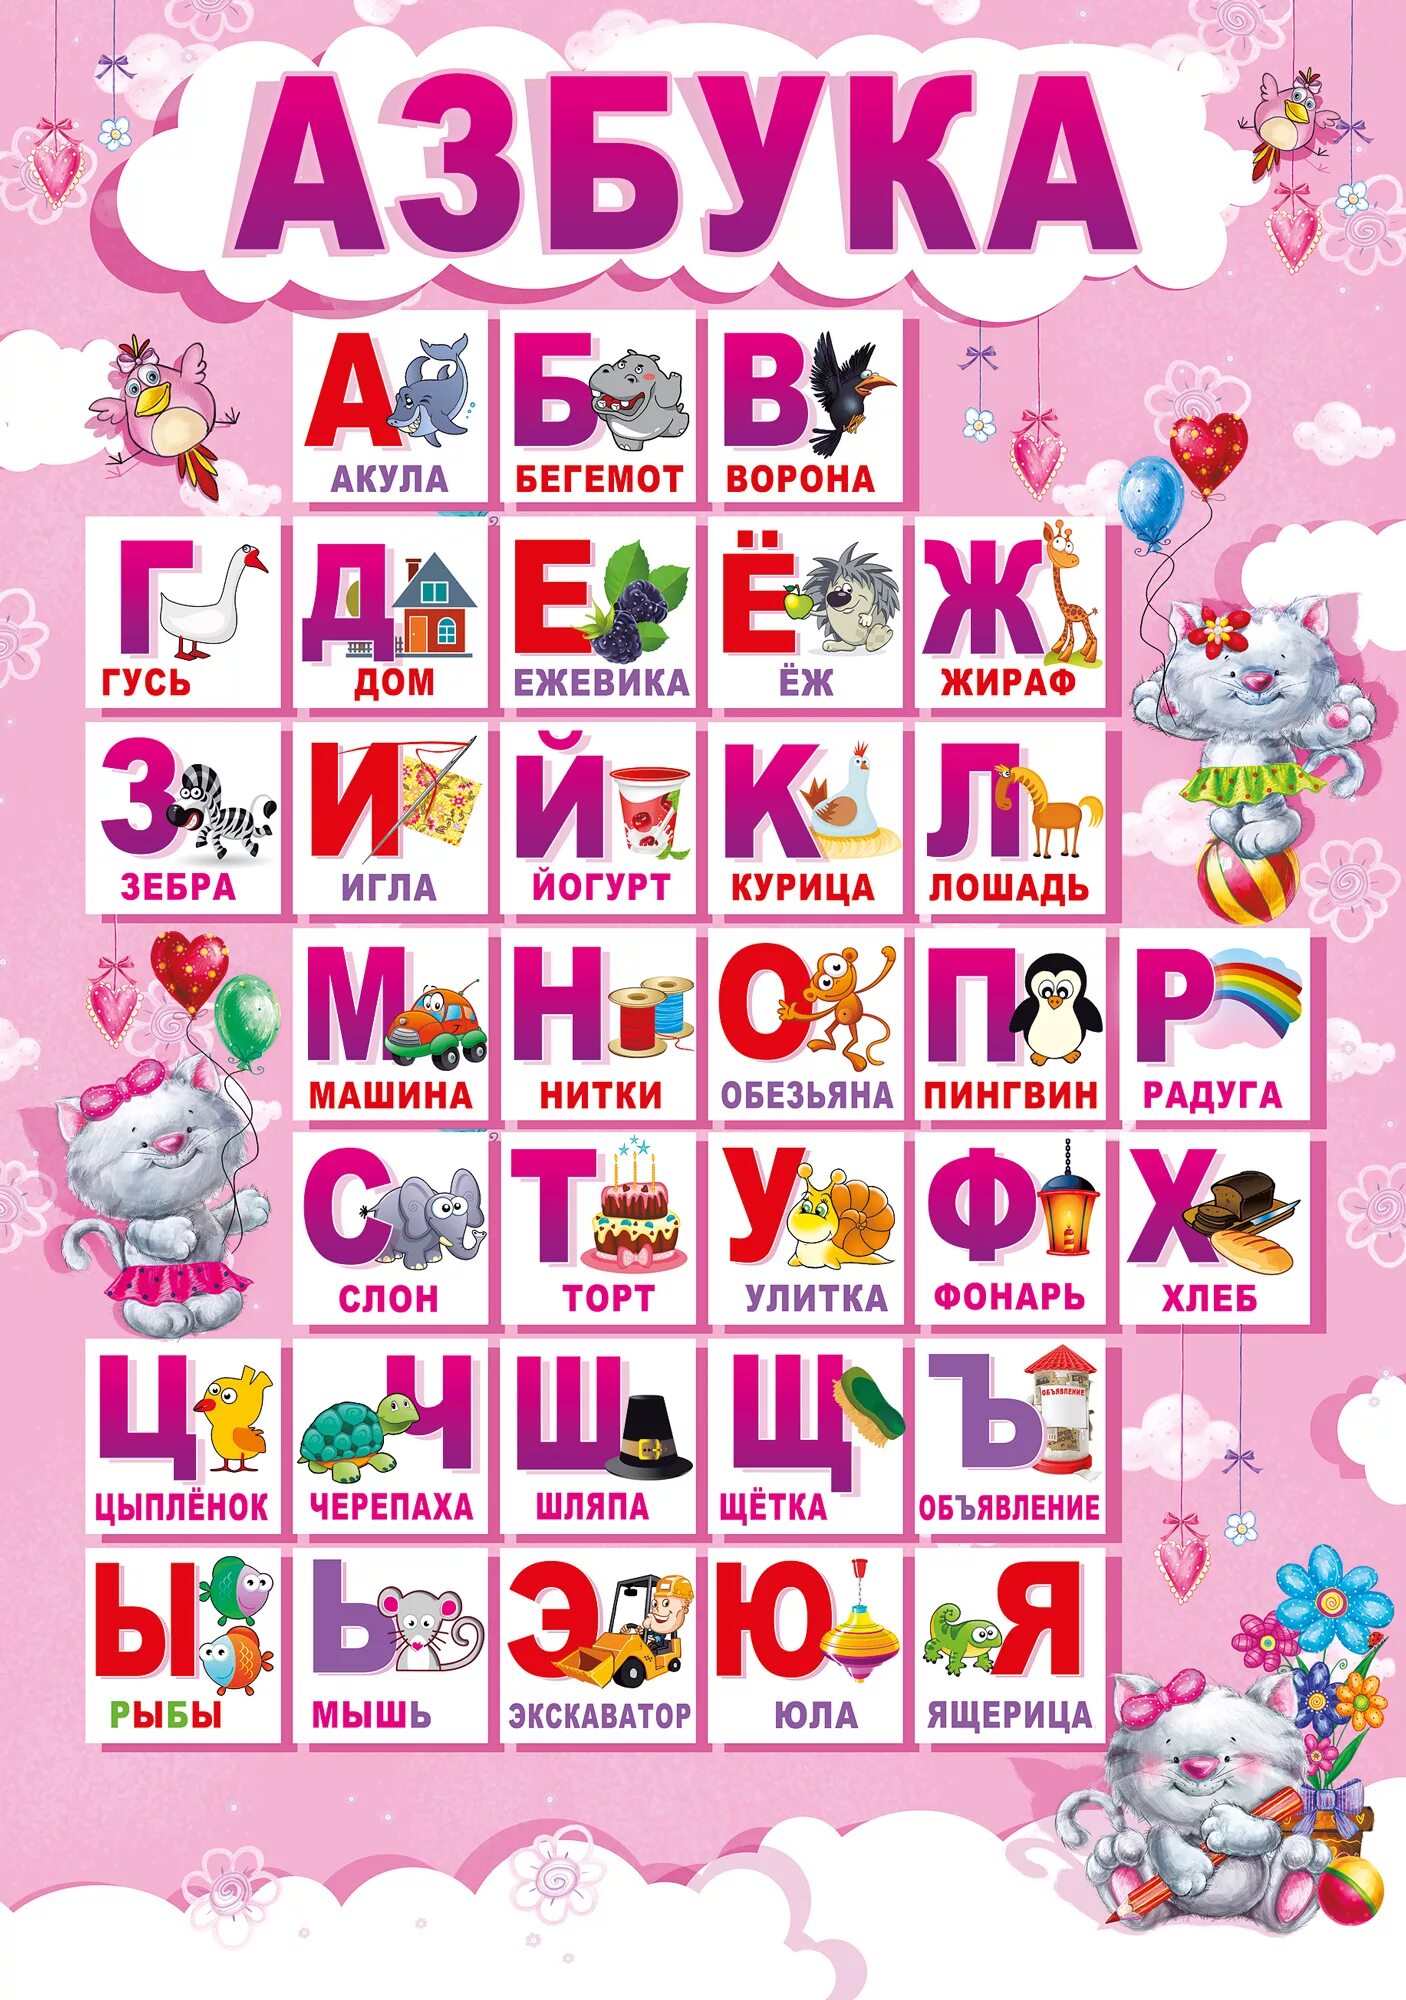 Алфавит хороших слов. Алфавит для детей. Алфавит "детский". Азбука для дошкольников. Плакат алфавит для детей.